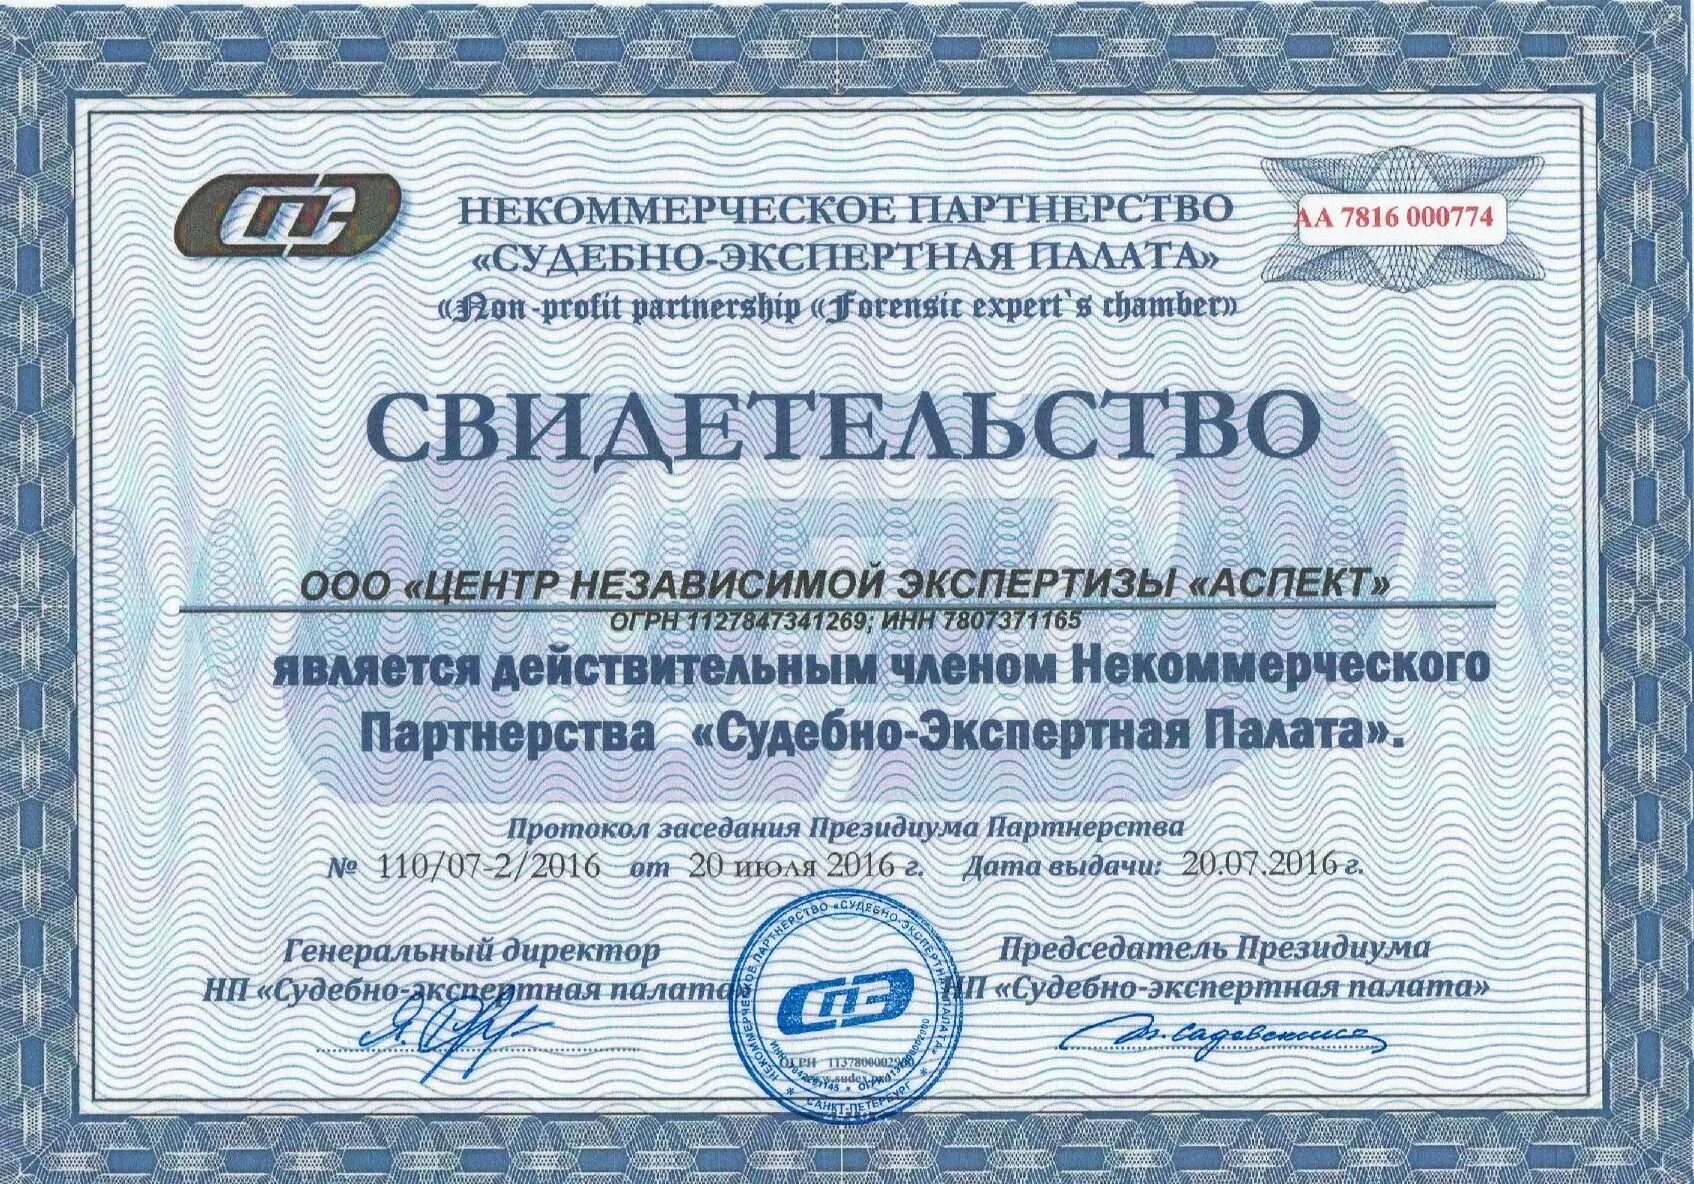 Центр независимой экспертизы. Сертификат на проведение экспертизы. Дагестанского центра независимой экспертизы. Судебно-экспертная палата.